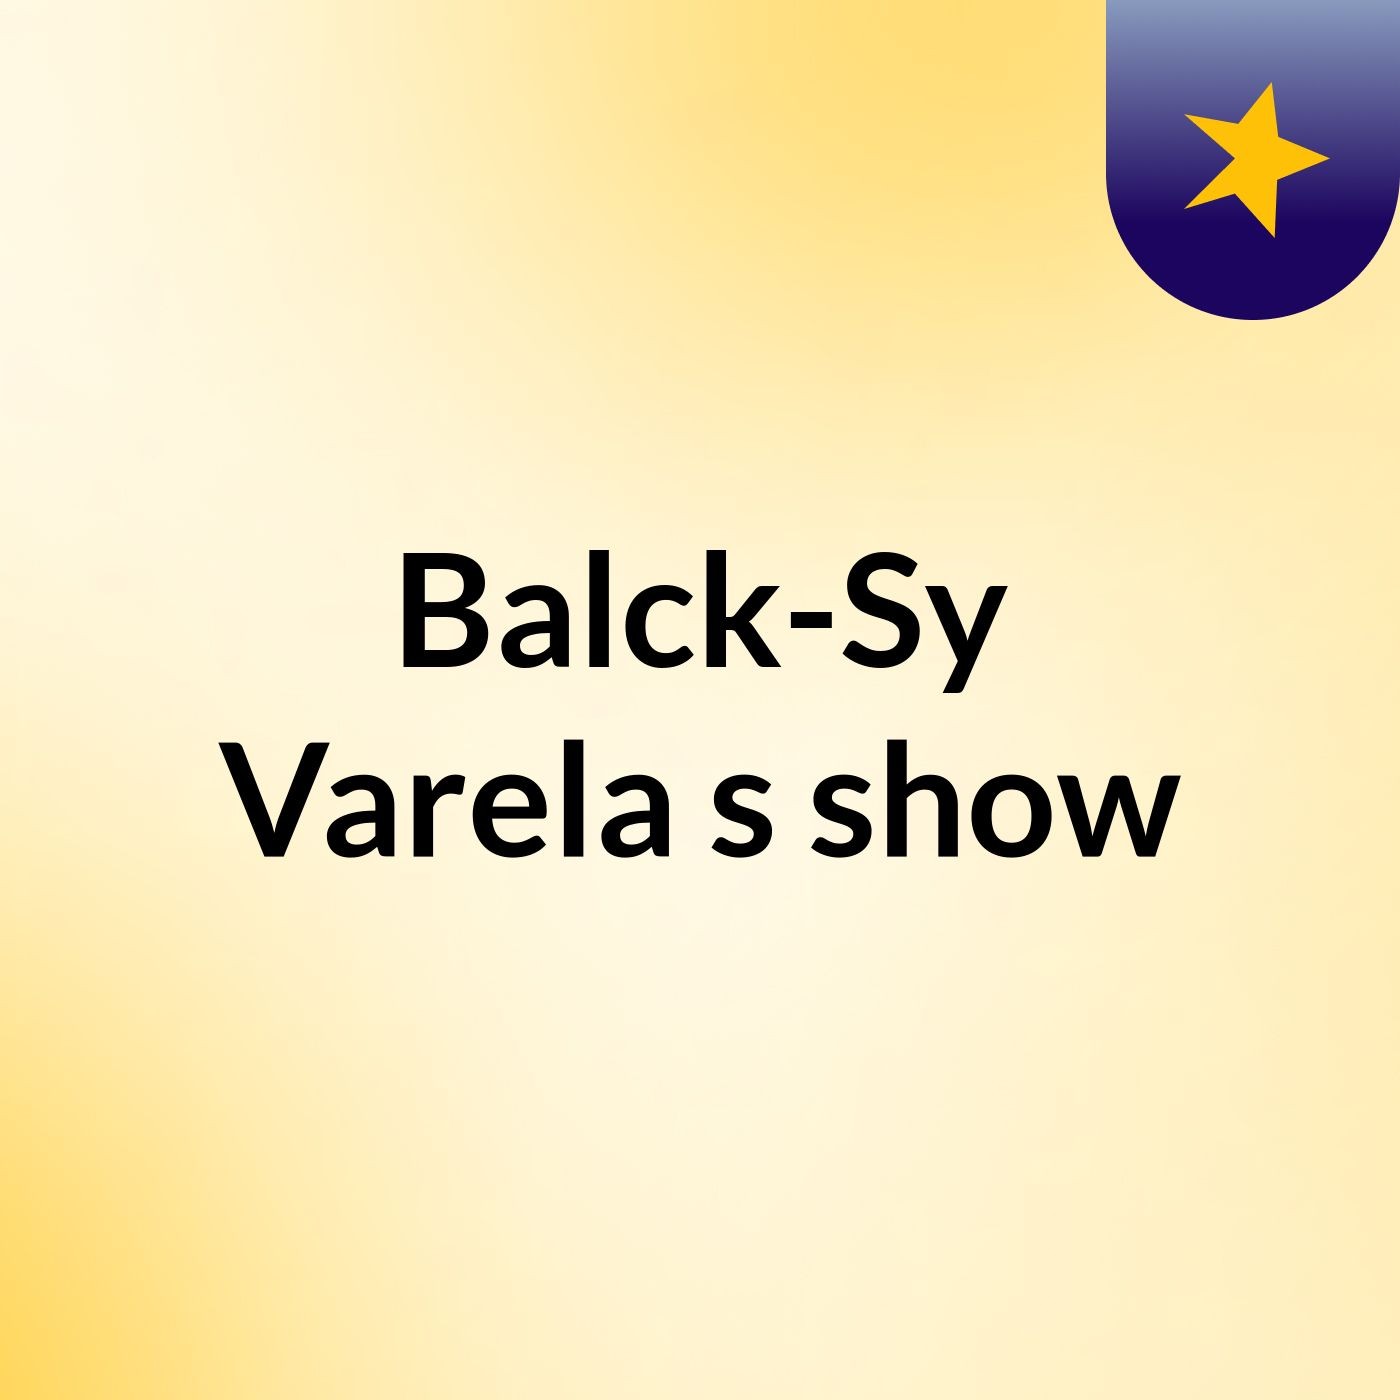 Balck-Sy Varela's show